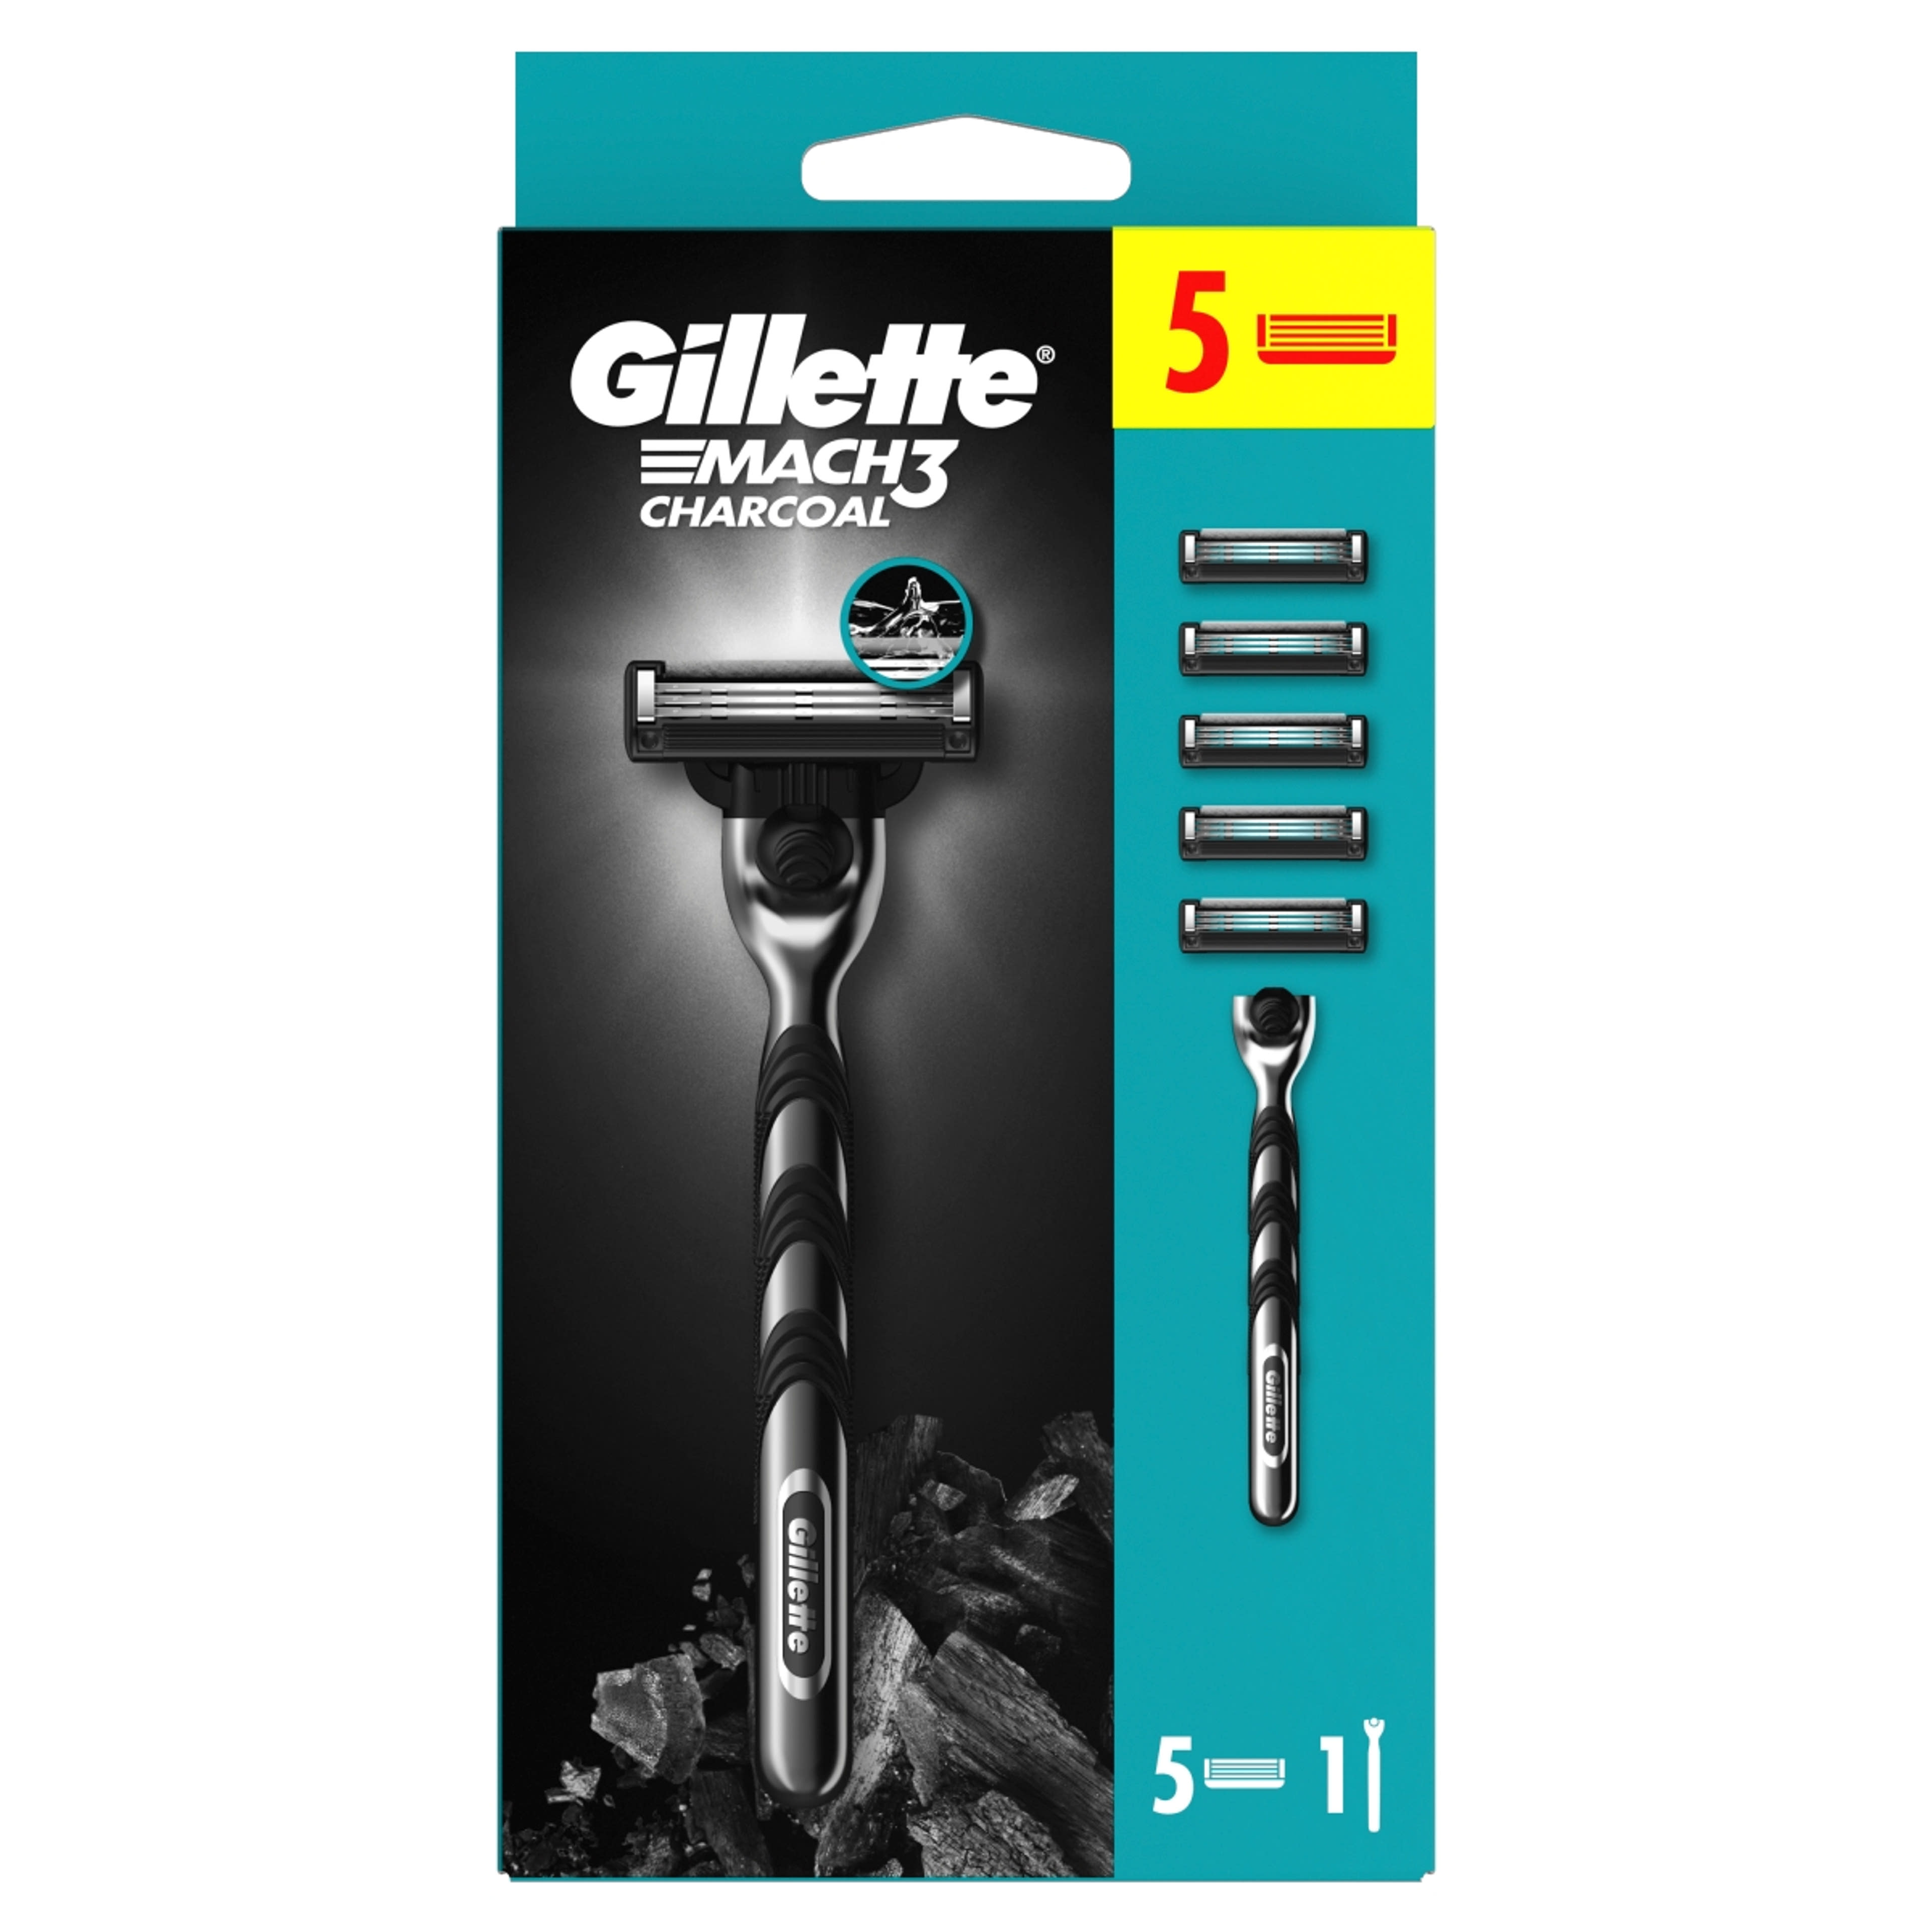 Gillette Mach3 Charcoal borotva készülék + 5 db betét - 1 db-1